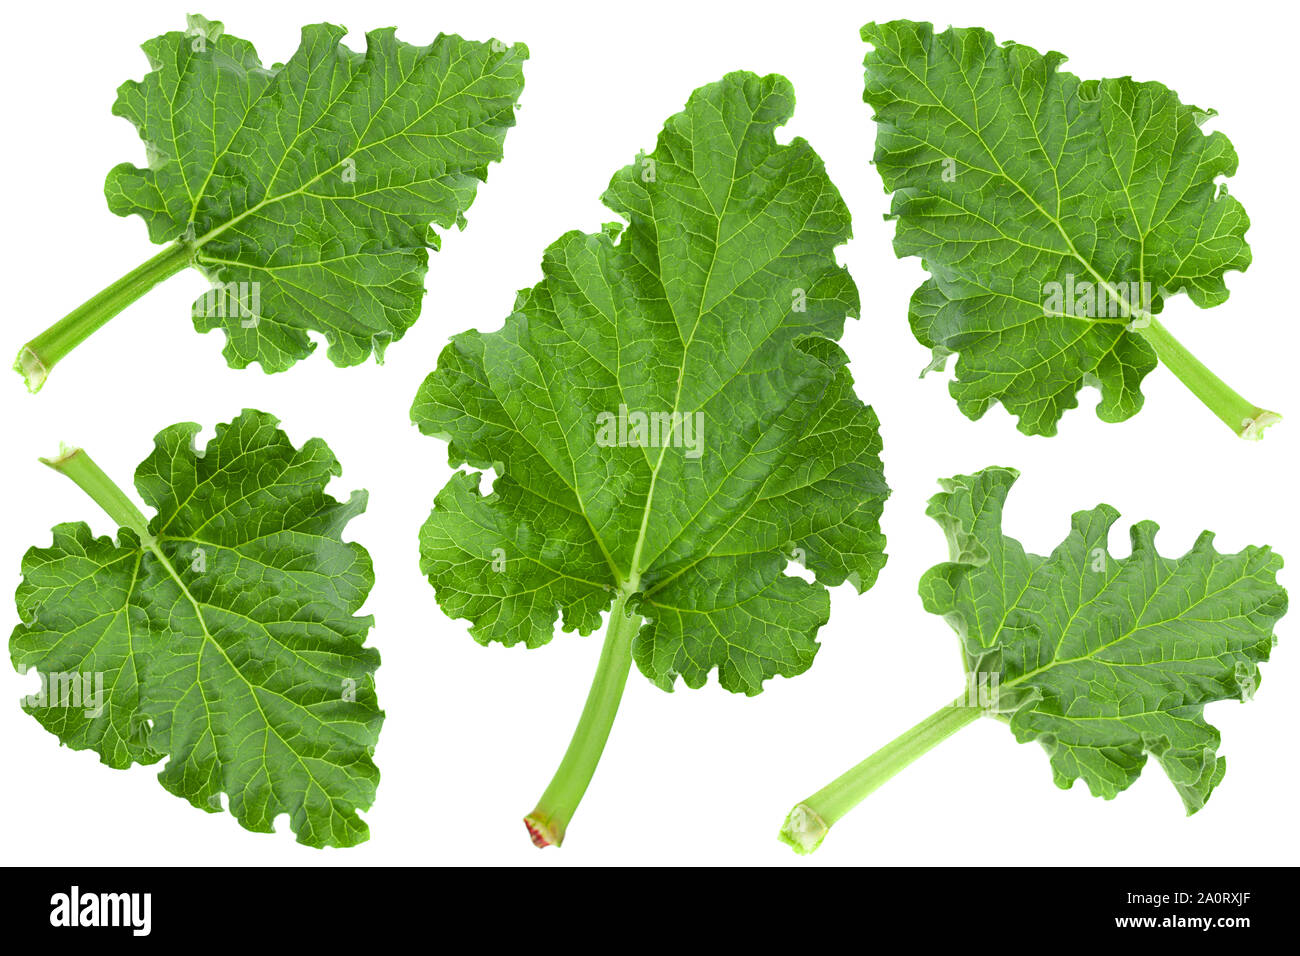 Rhubarb vegetable leaf set isolated on white background Stock Photo